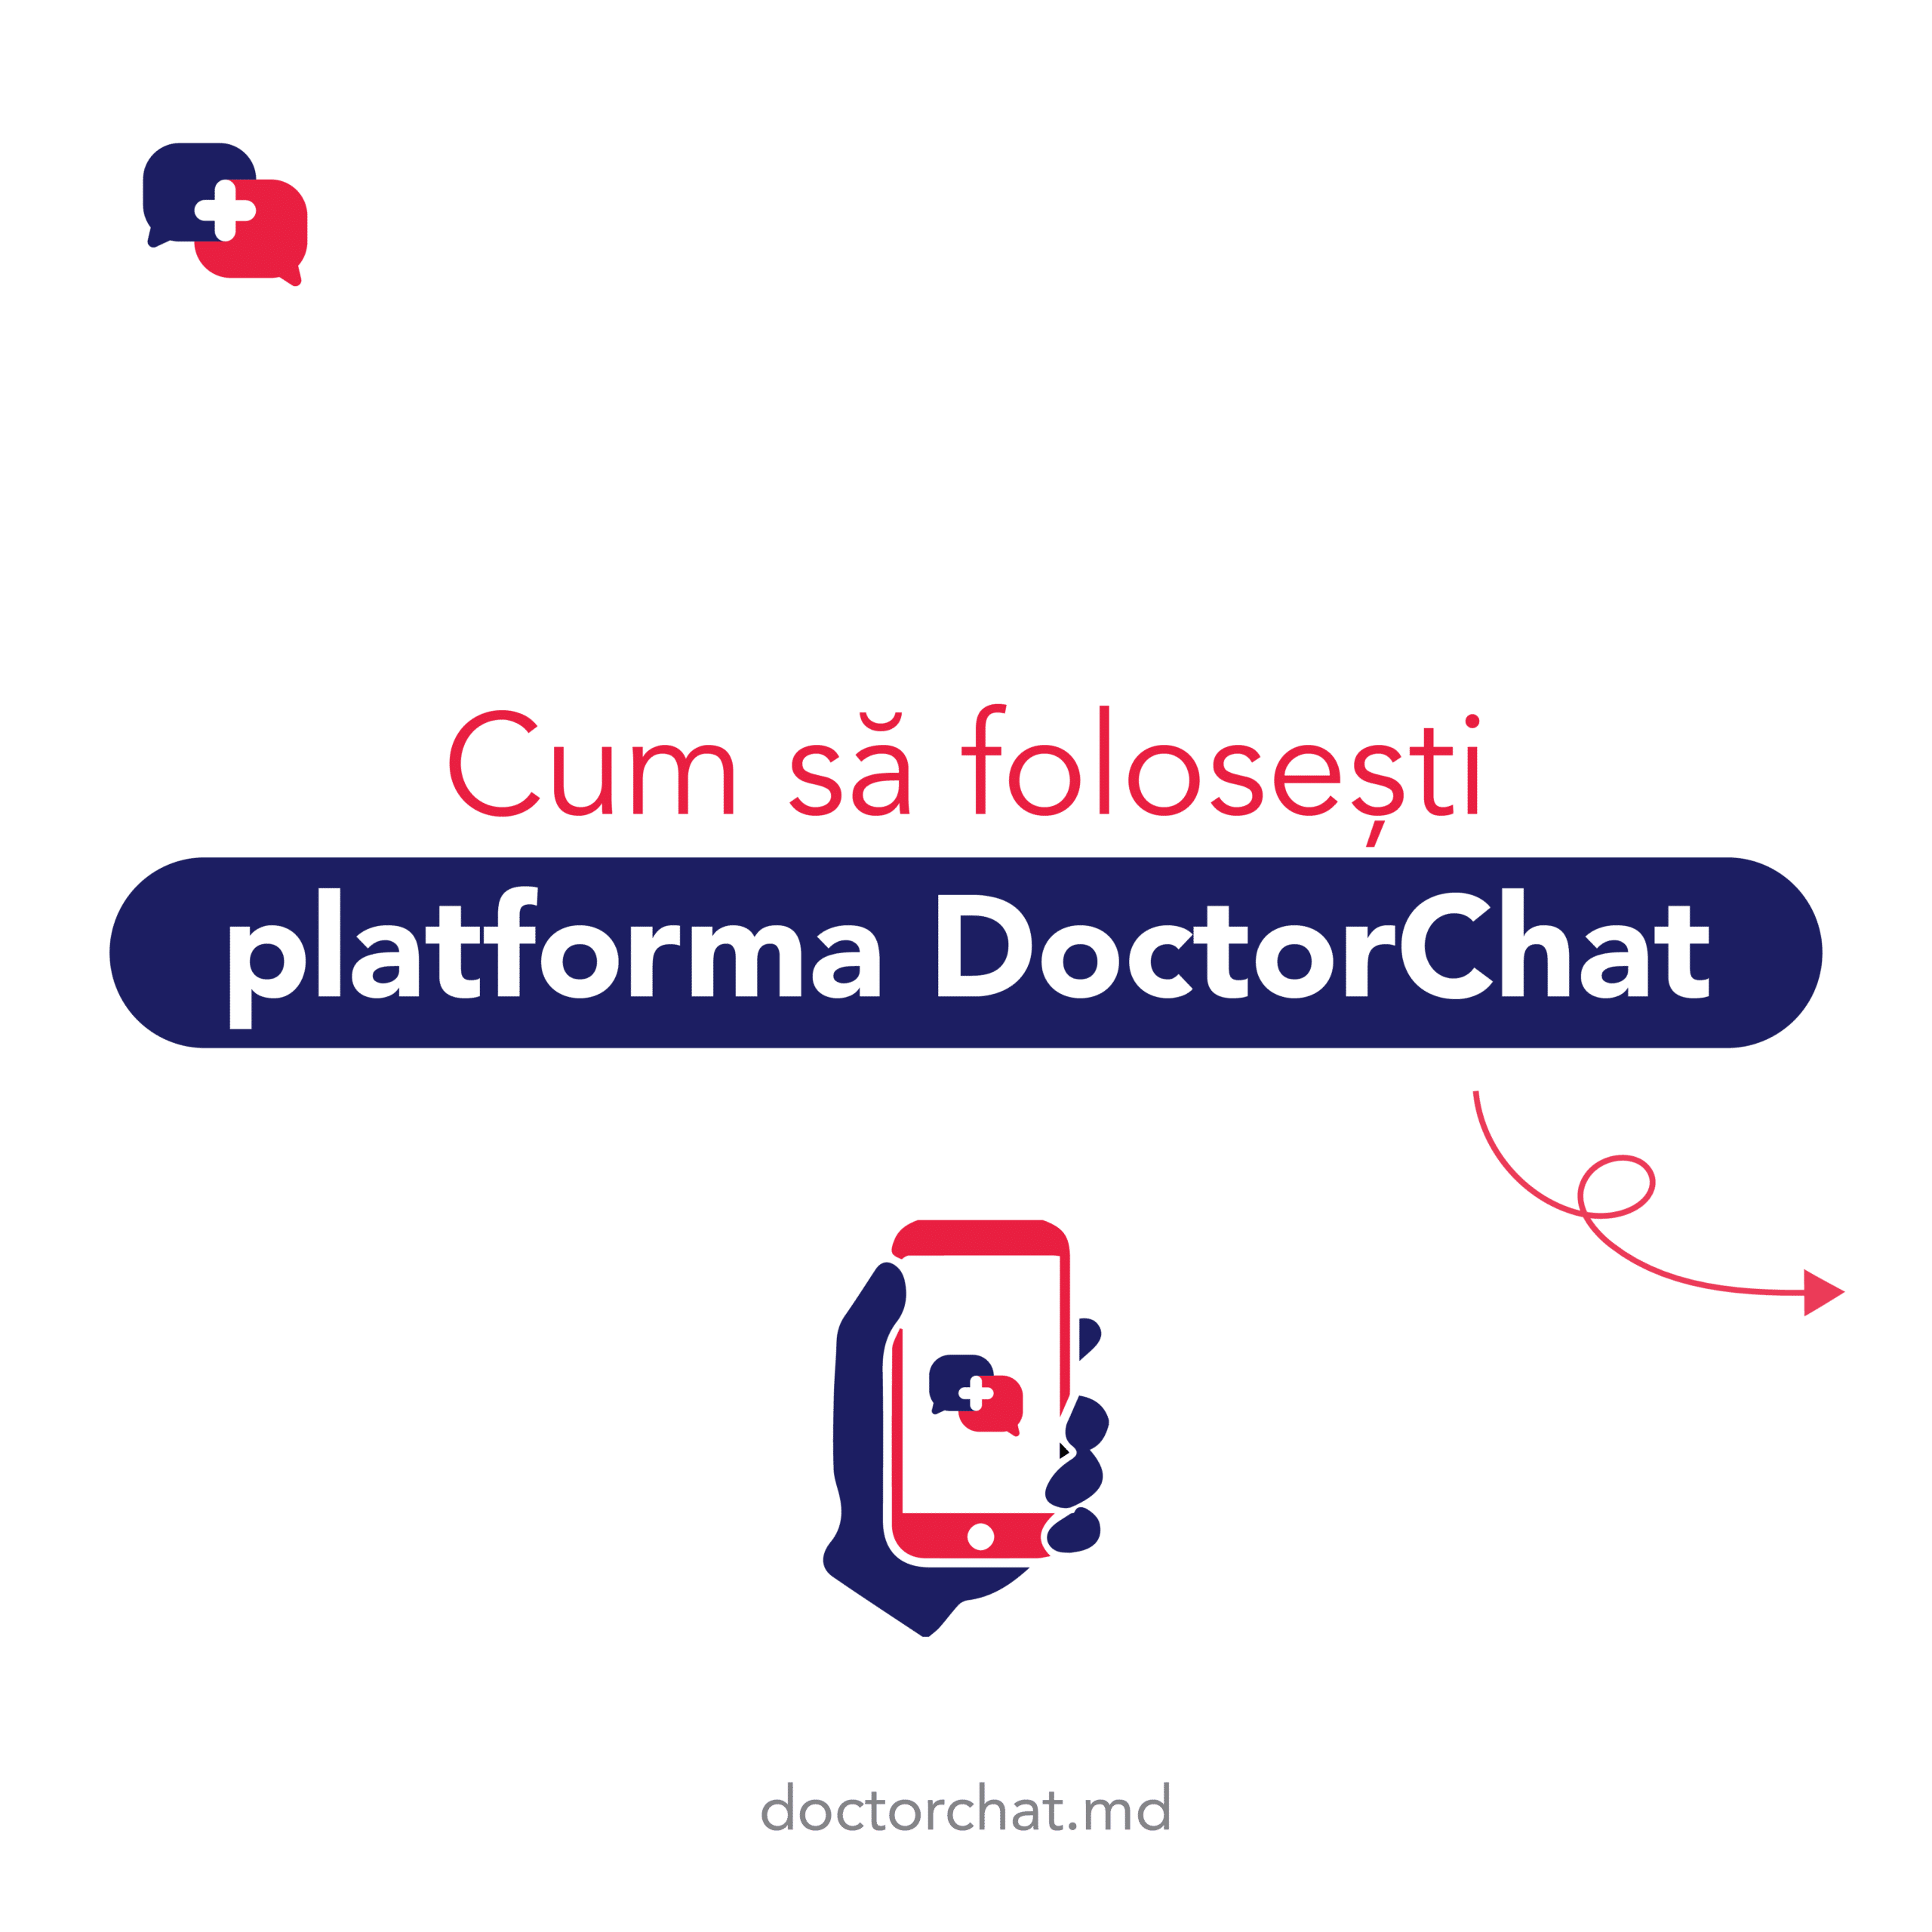 Cum să folosiți platforma DoctorChat?